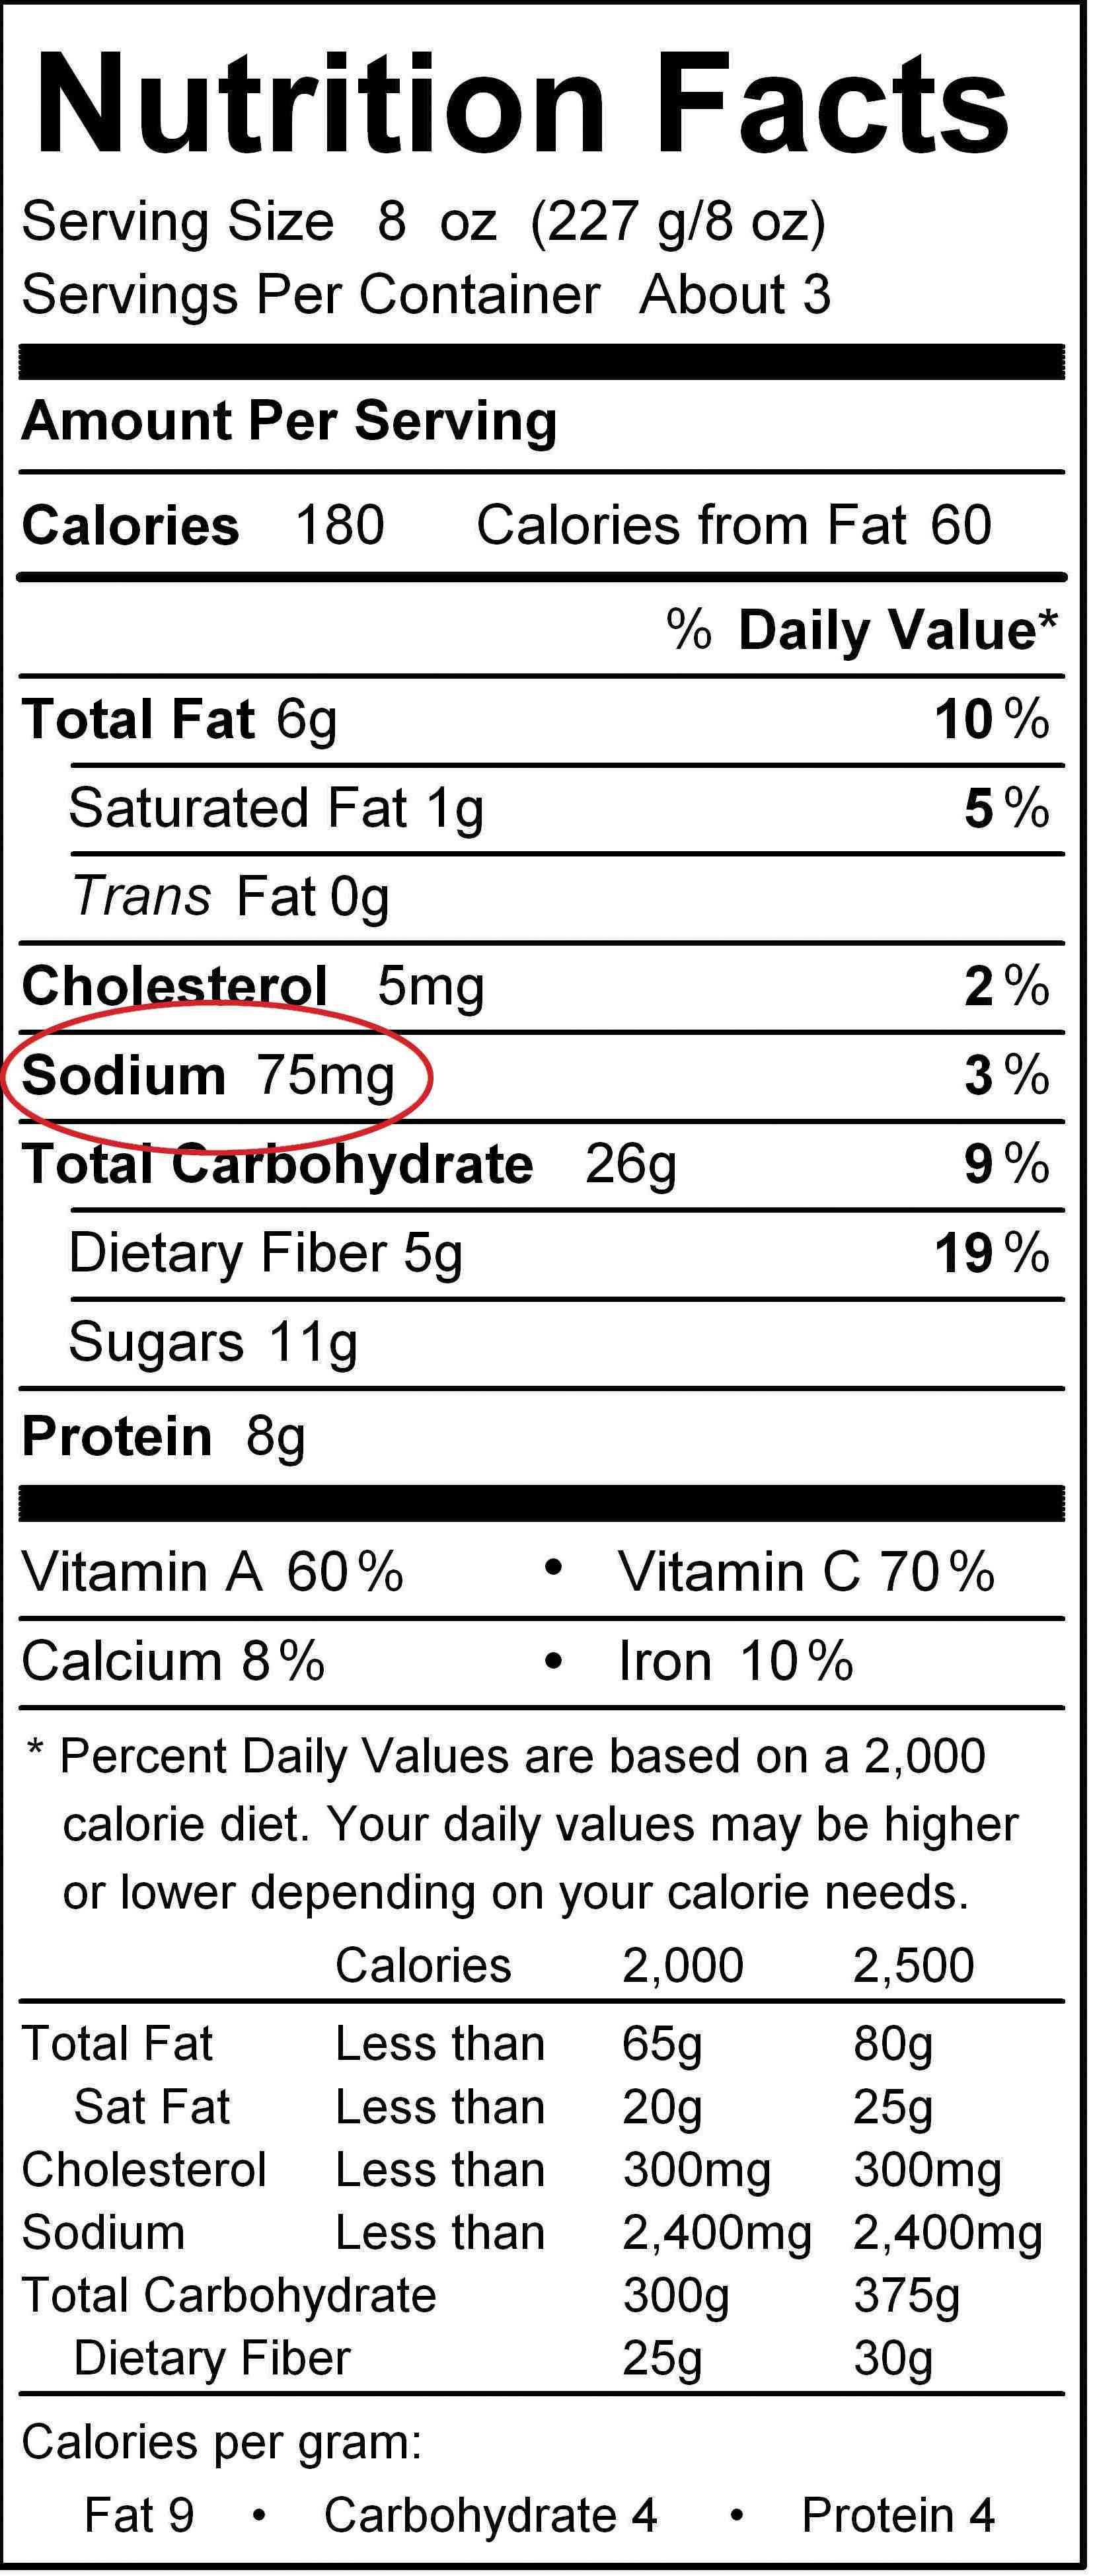 Etiqueta nutricional con círculo rojo alrededor del contenido de Sodio.